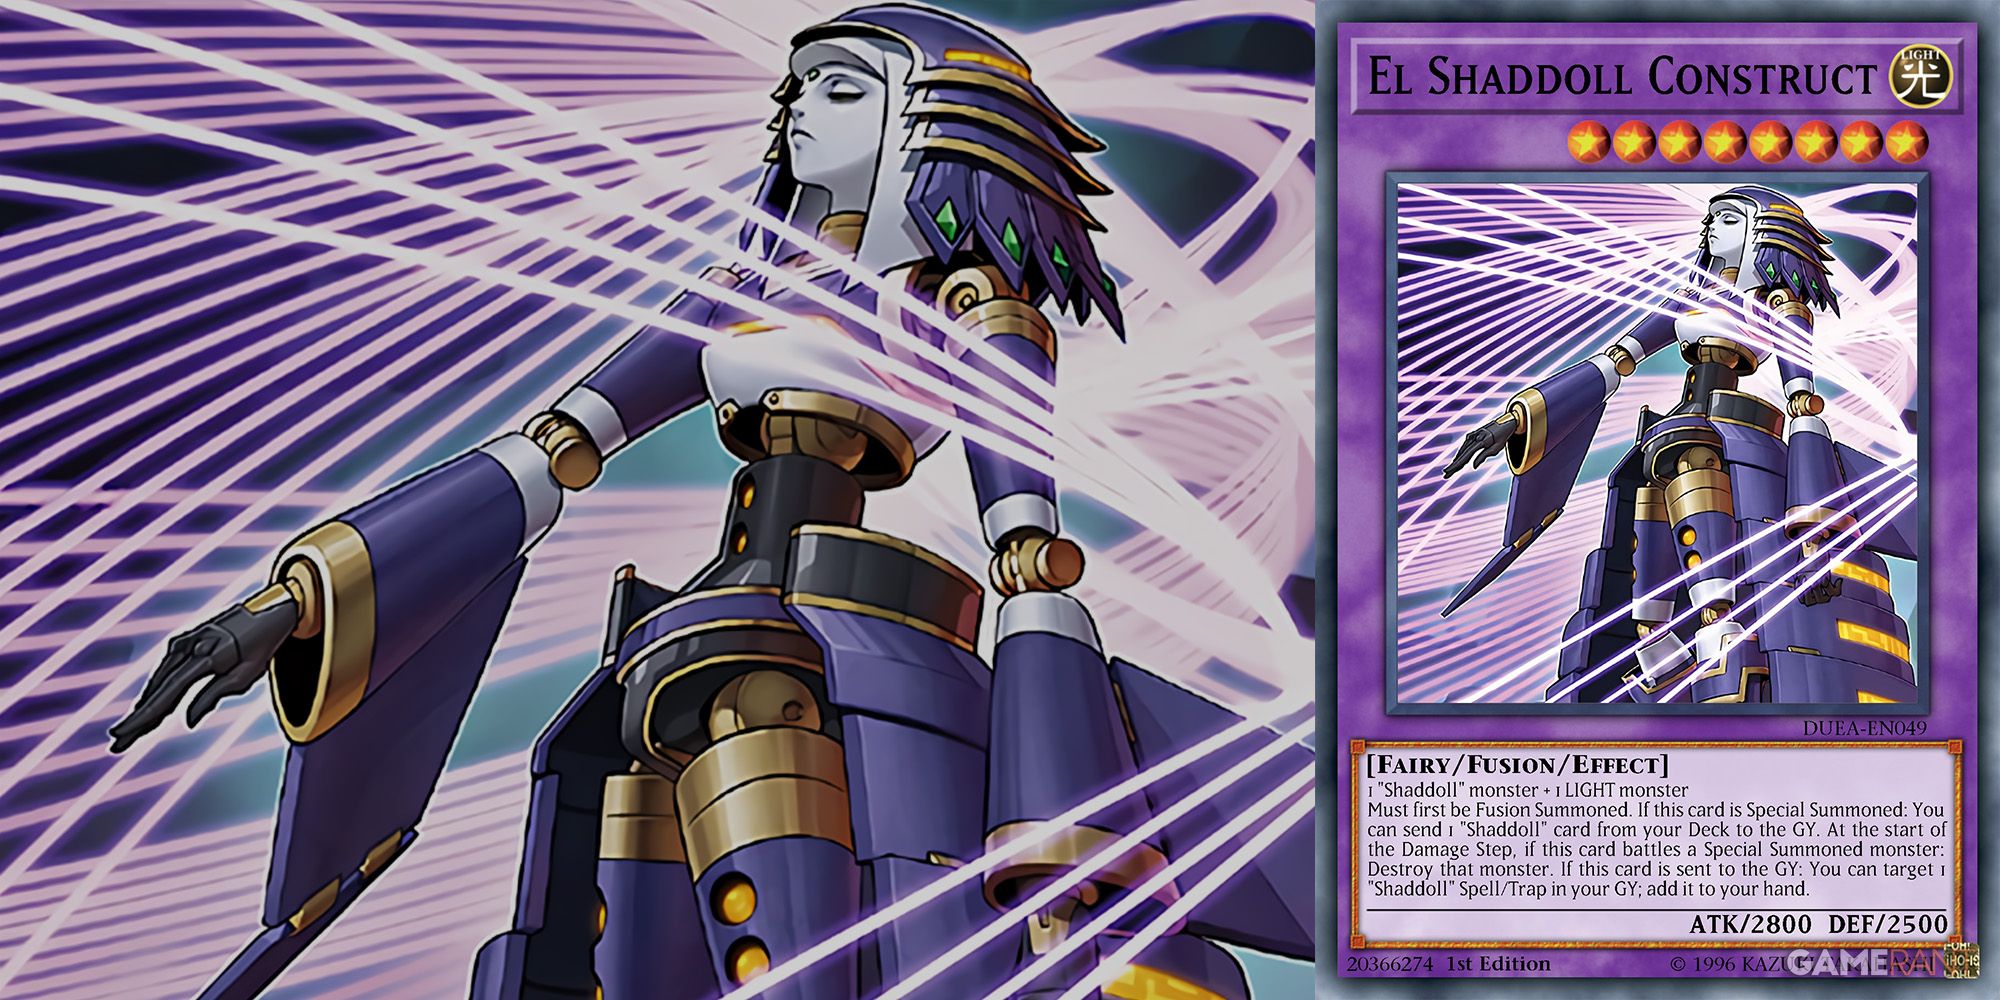 El Shaddoll Construct Fairy-Type Yu-Gi-Oh card